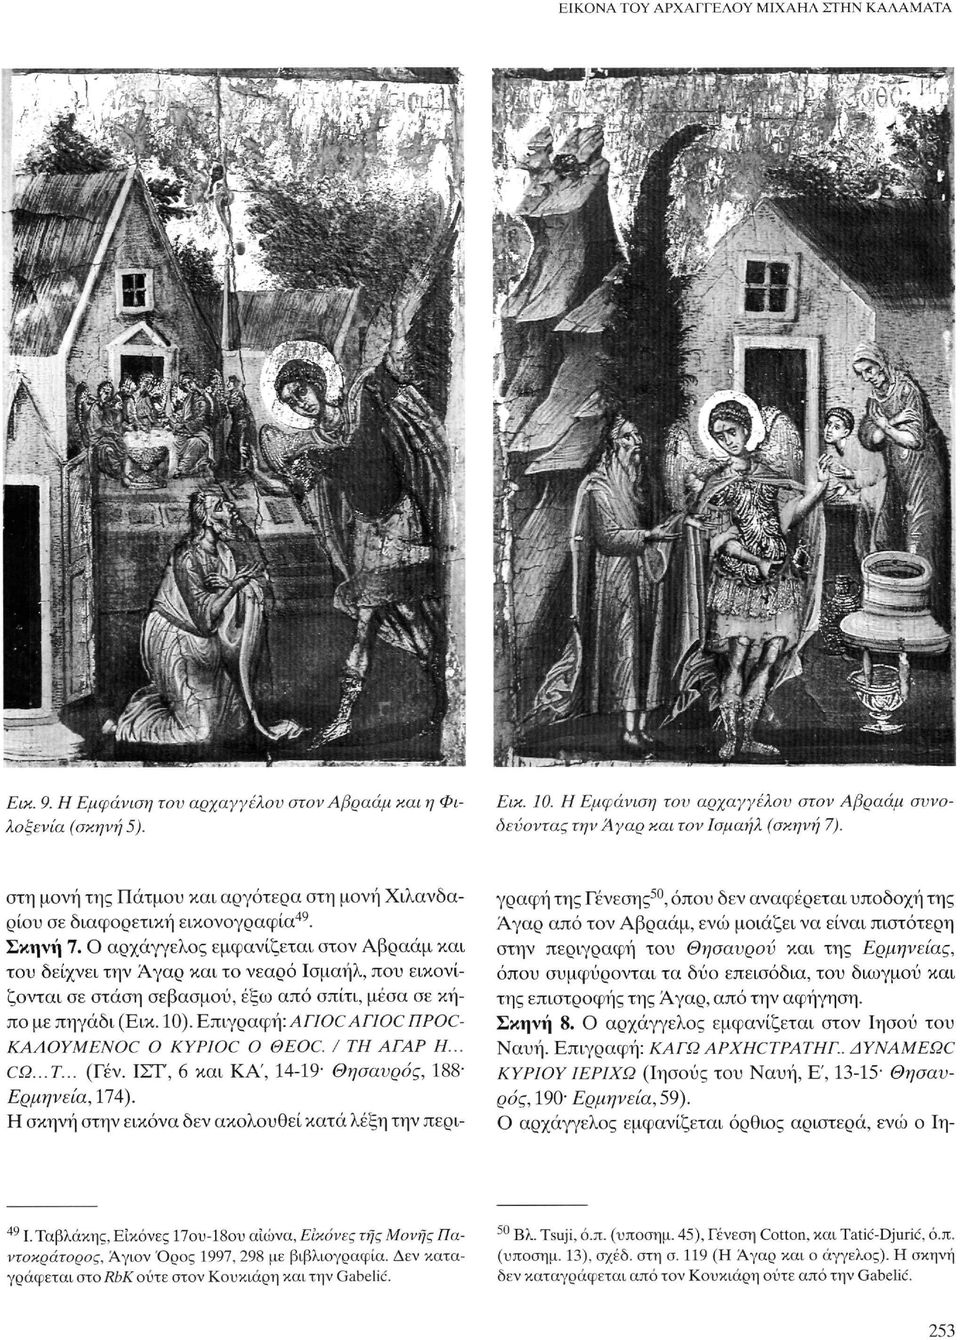 Ο αρχάγγελος εμφανίζεται στον Αβραάμ και του δείχνει την Λγαρ και το νεαρό Ισμαήλ, που εικονίζονται σε στάση σεβασμού, έξω από σπίτι, μέσα σε κήπο με πηγάδι (Εικ. 10).